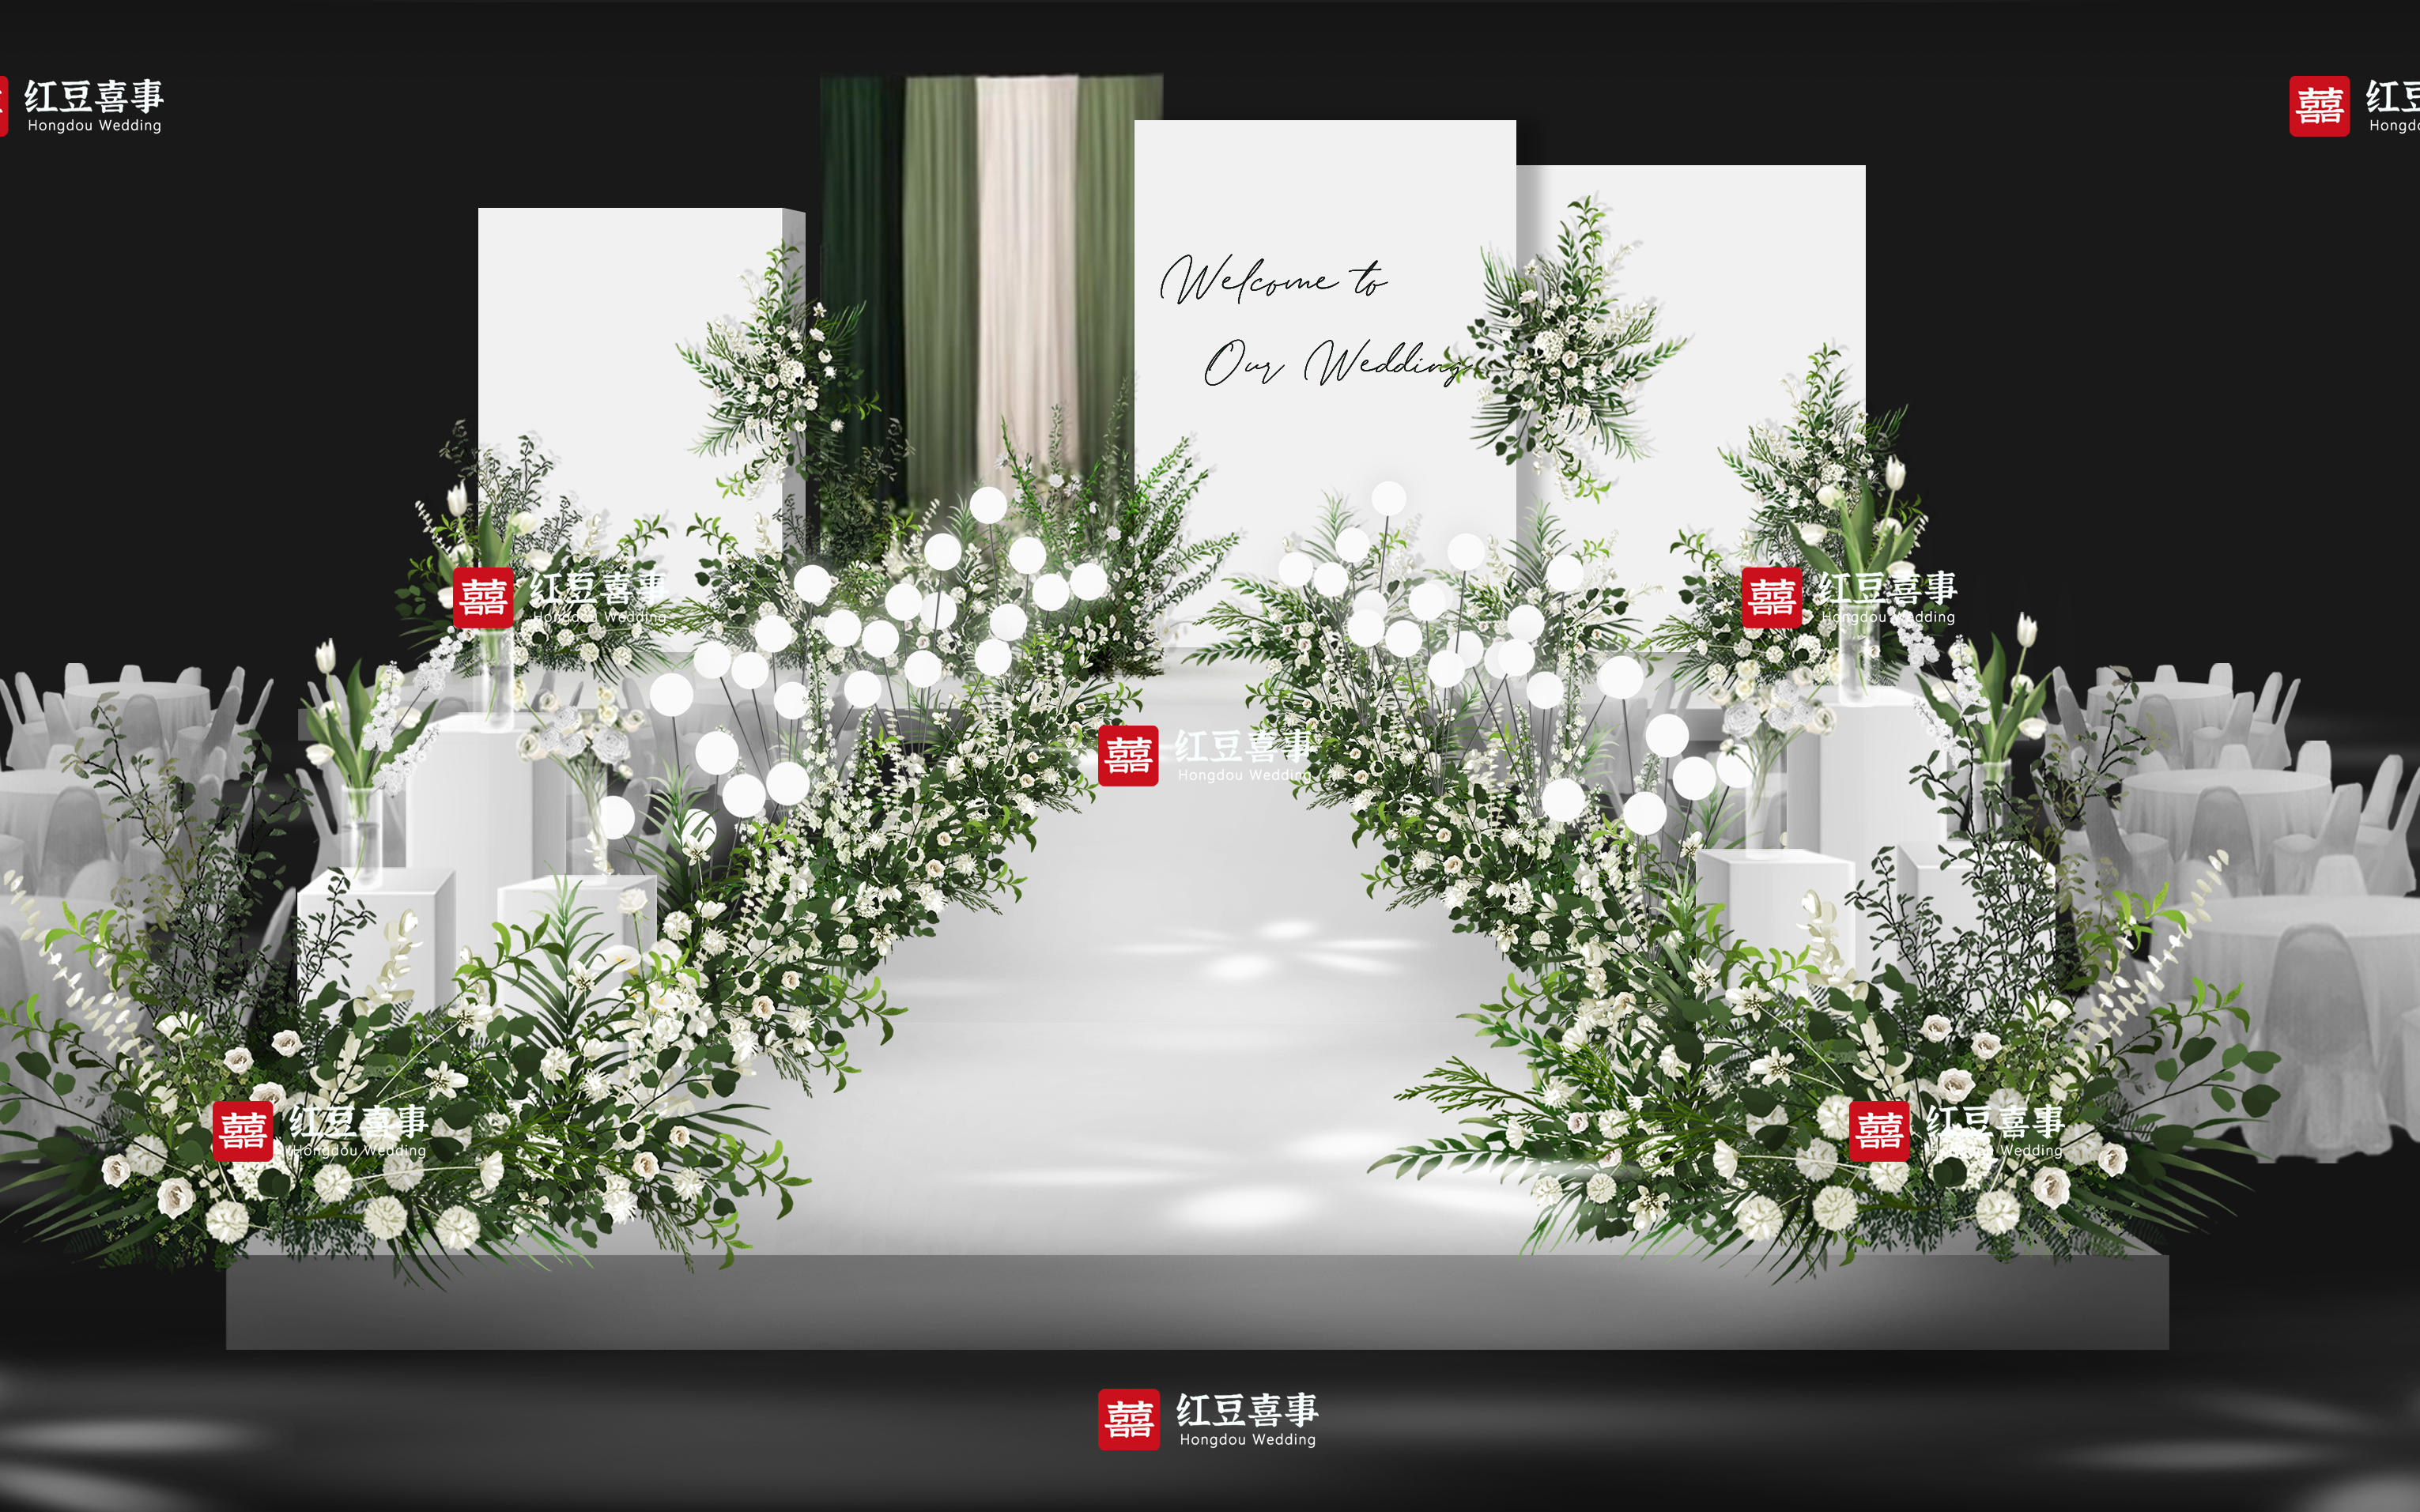 【红豆喜事】情诗-白绿色小清新婚礼